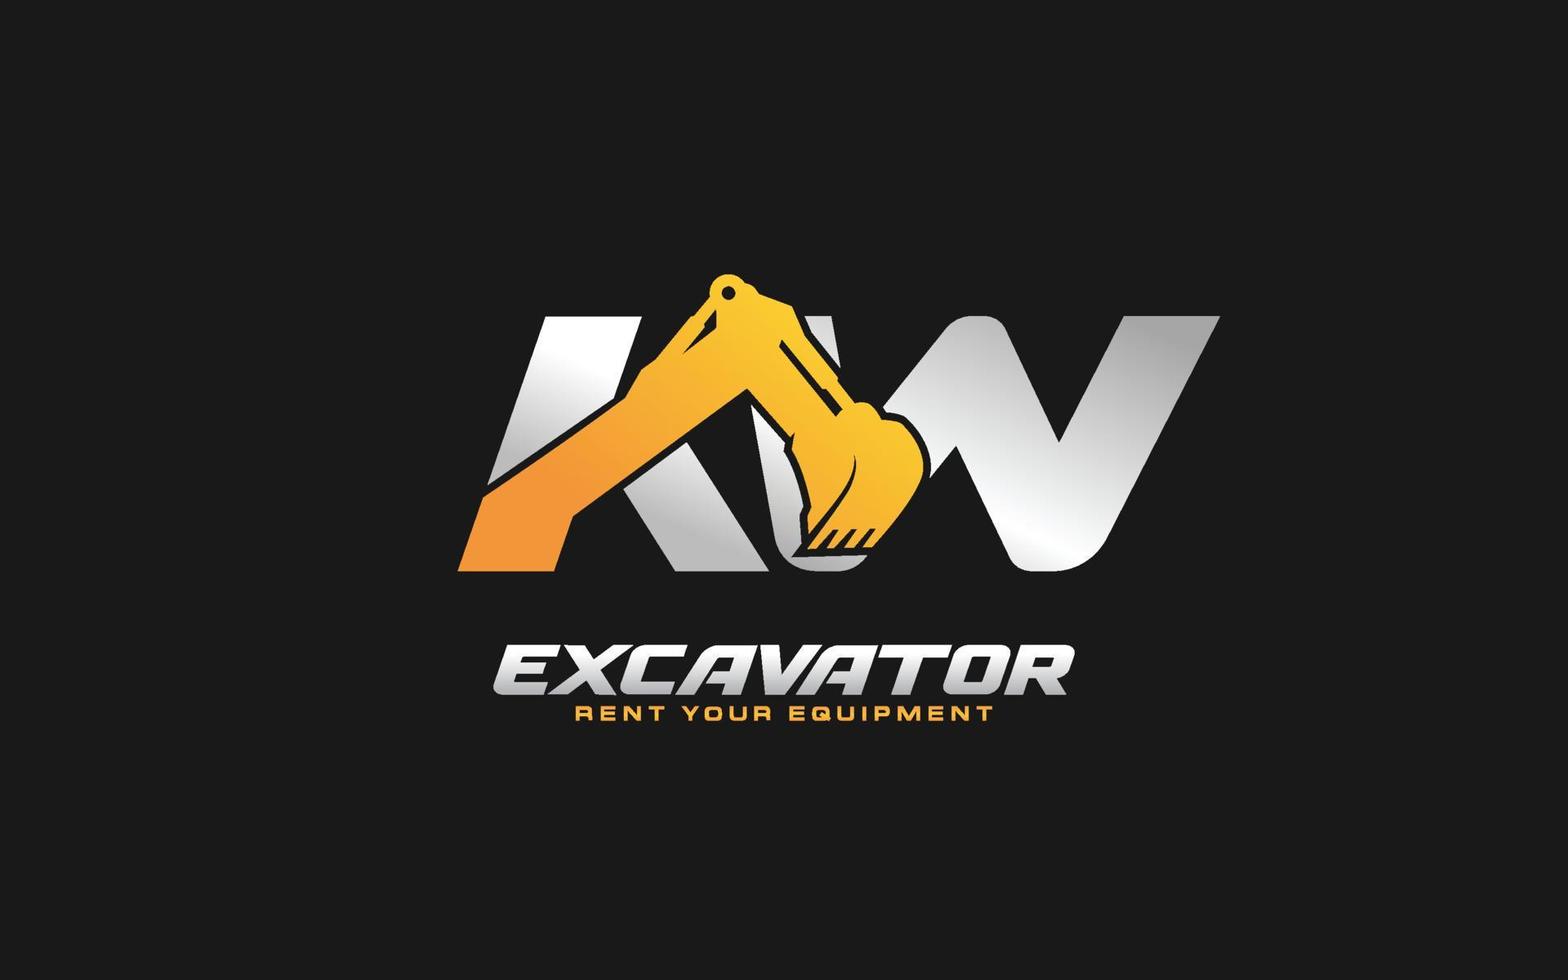 Excavadora con logotipo kw para empresa constructora. ilustración de vector de plantilla de equipo pesado para su marca.